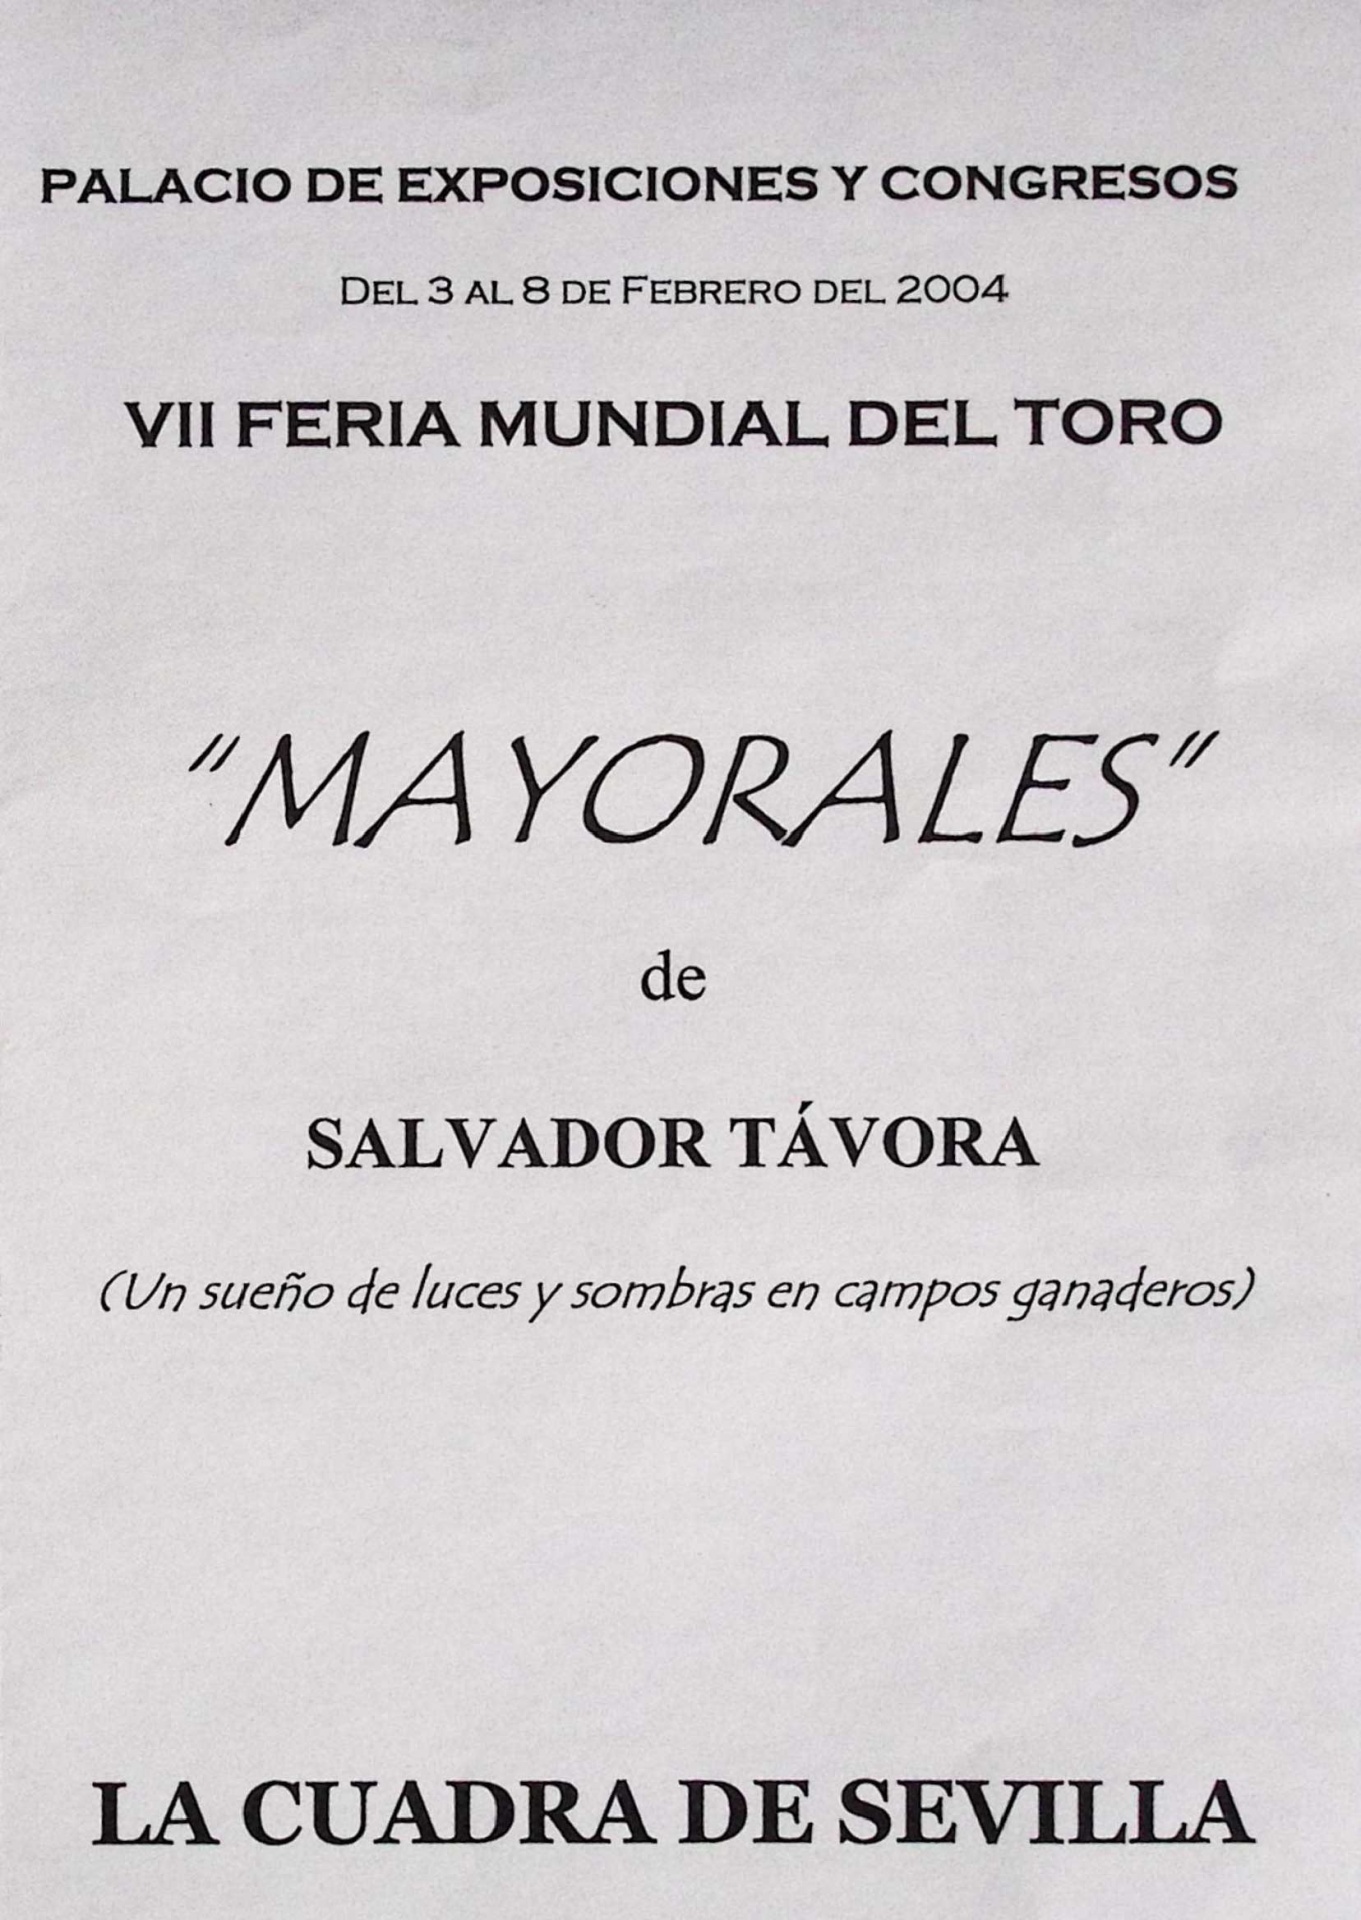 "Mayorales" de Salvador Távora (un sueño de luces y sombras en campos ganaderos). La Cuadra de Sevilla. VII Feria Mundial del Toro